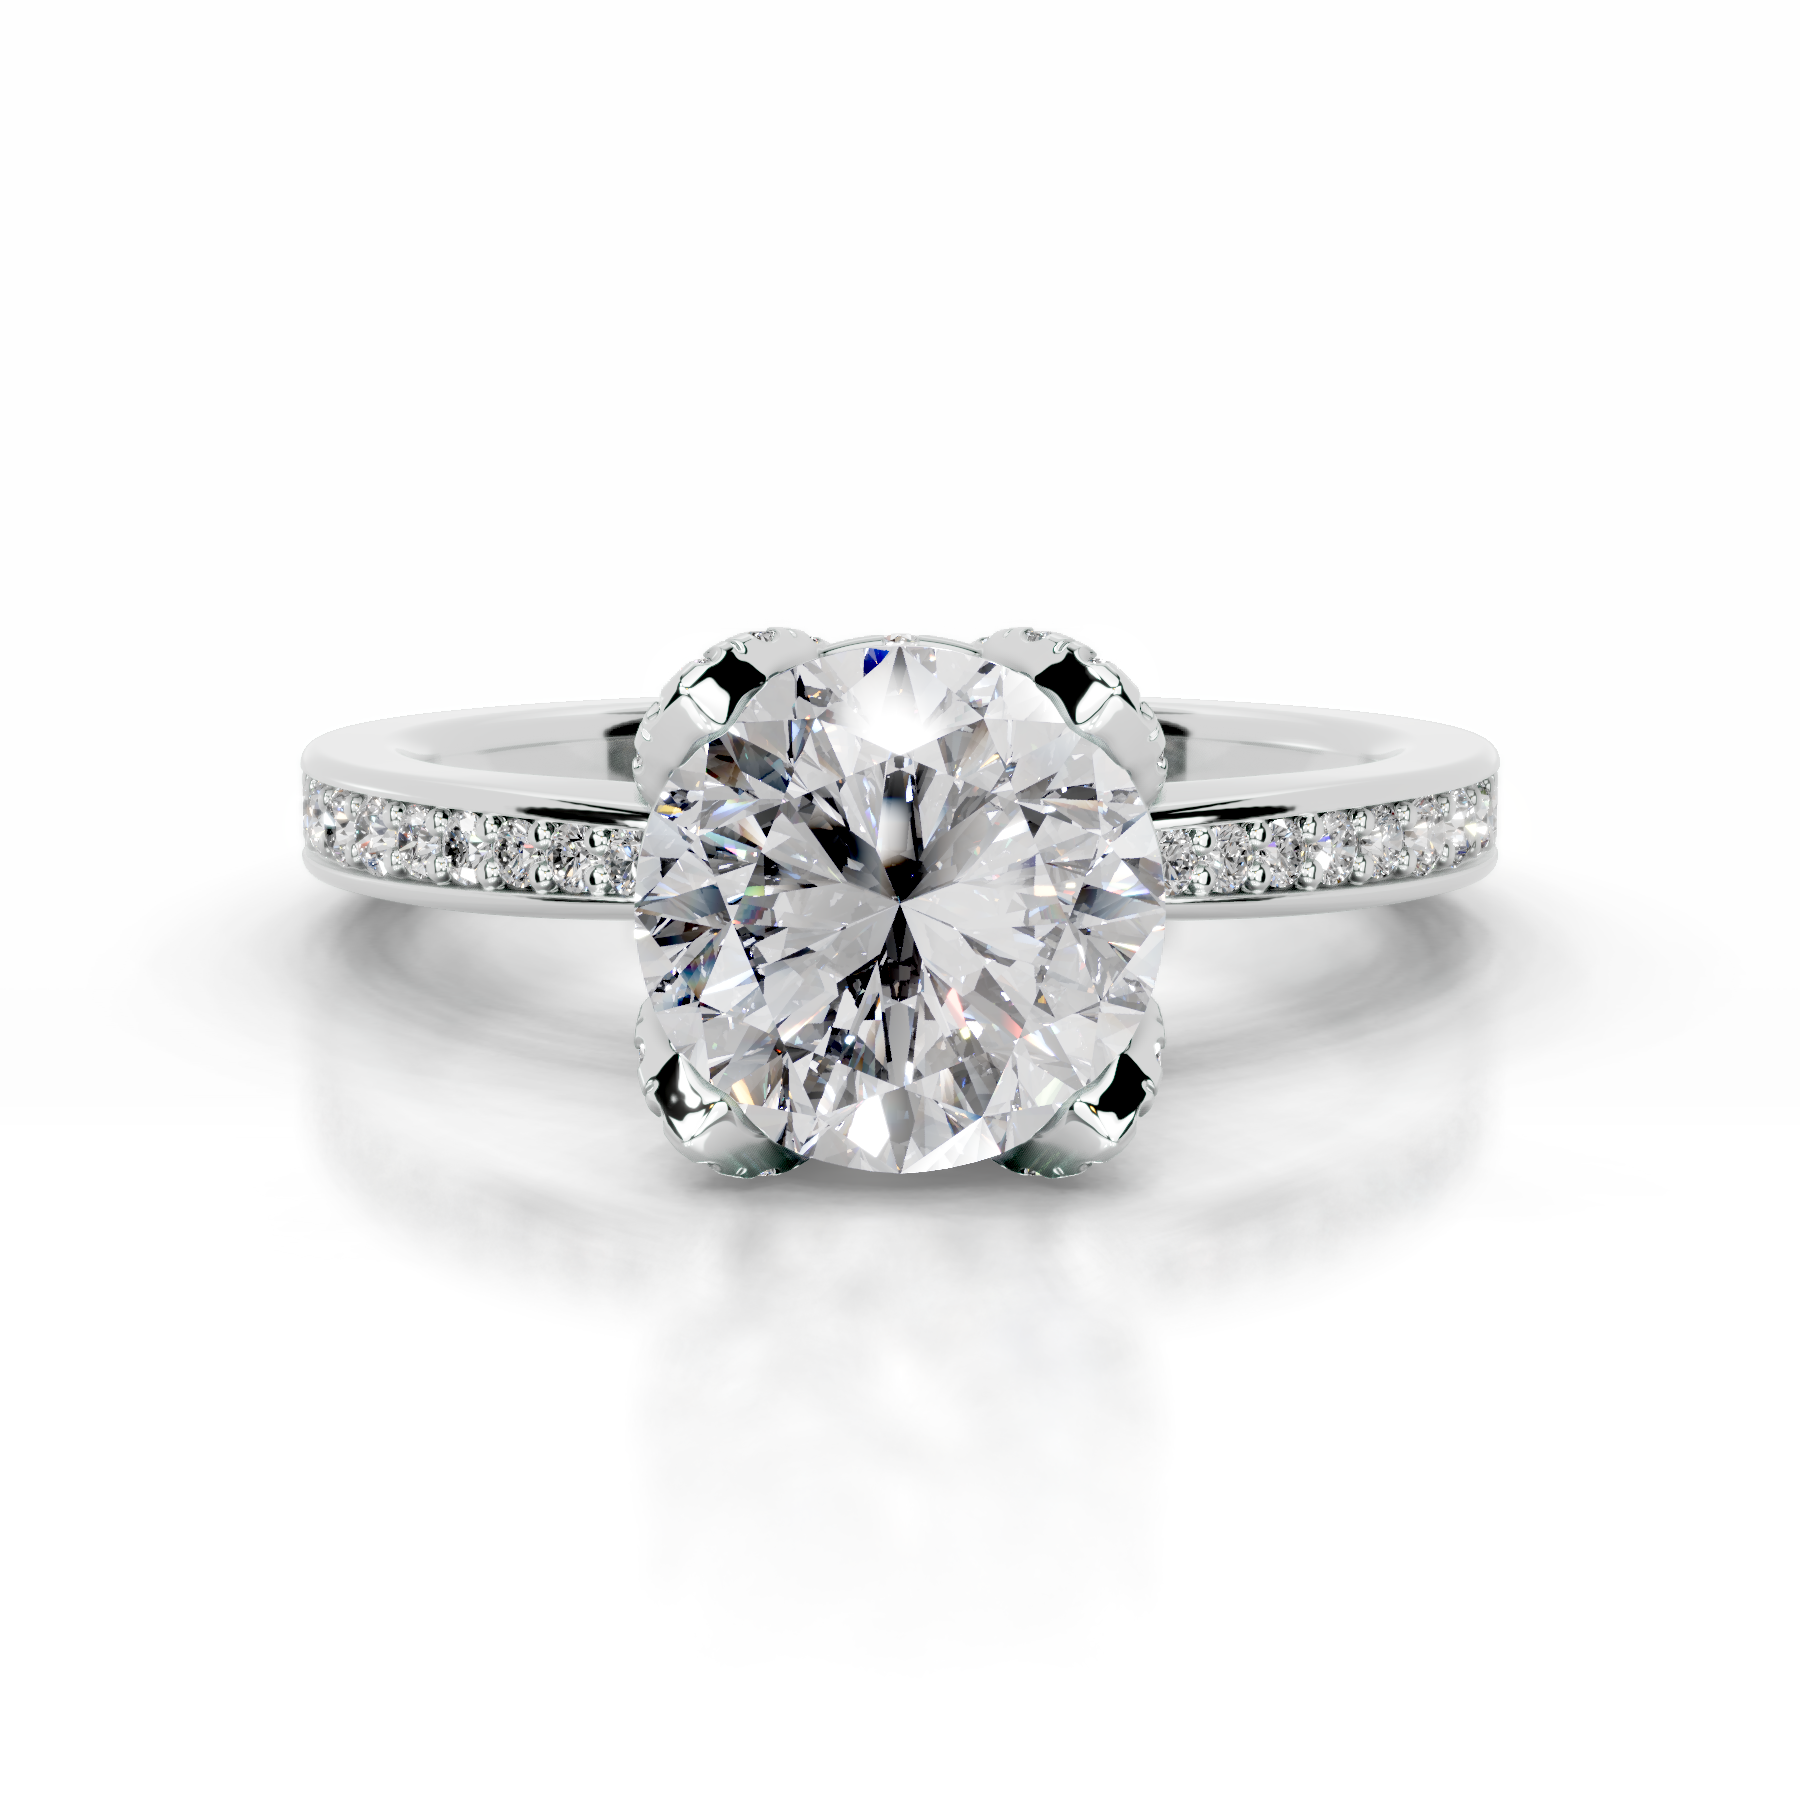 Daria Diamond Engagement Ring   (1.85 Carat) -14K White Gold